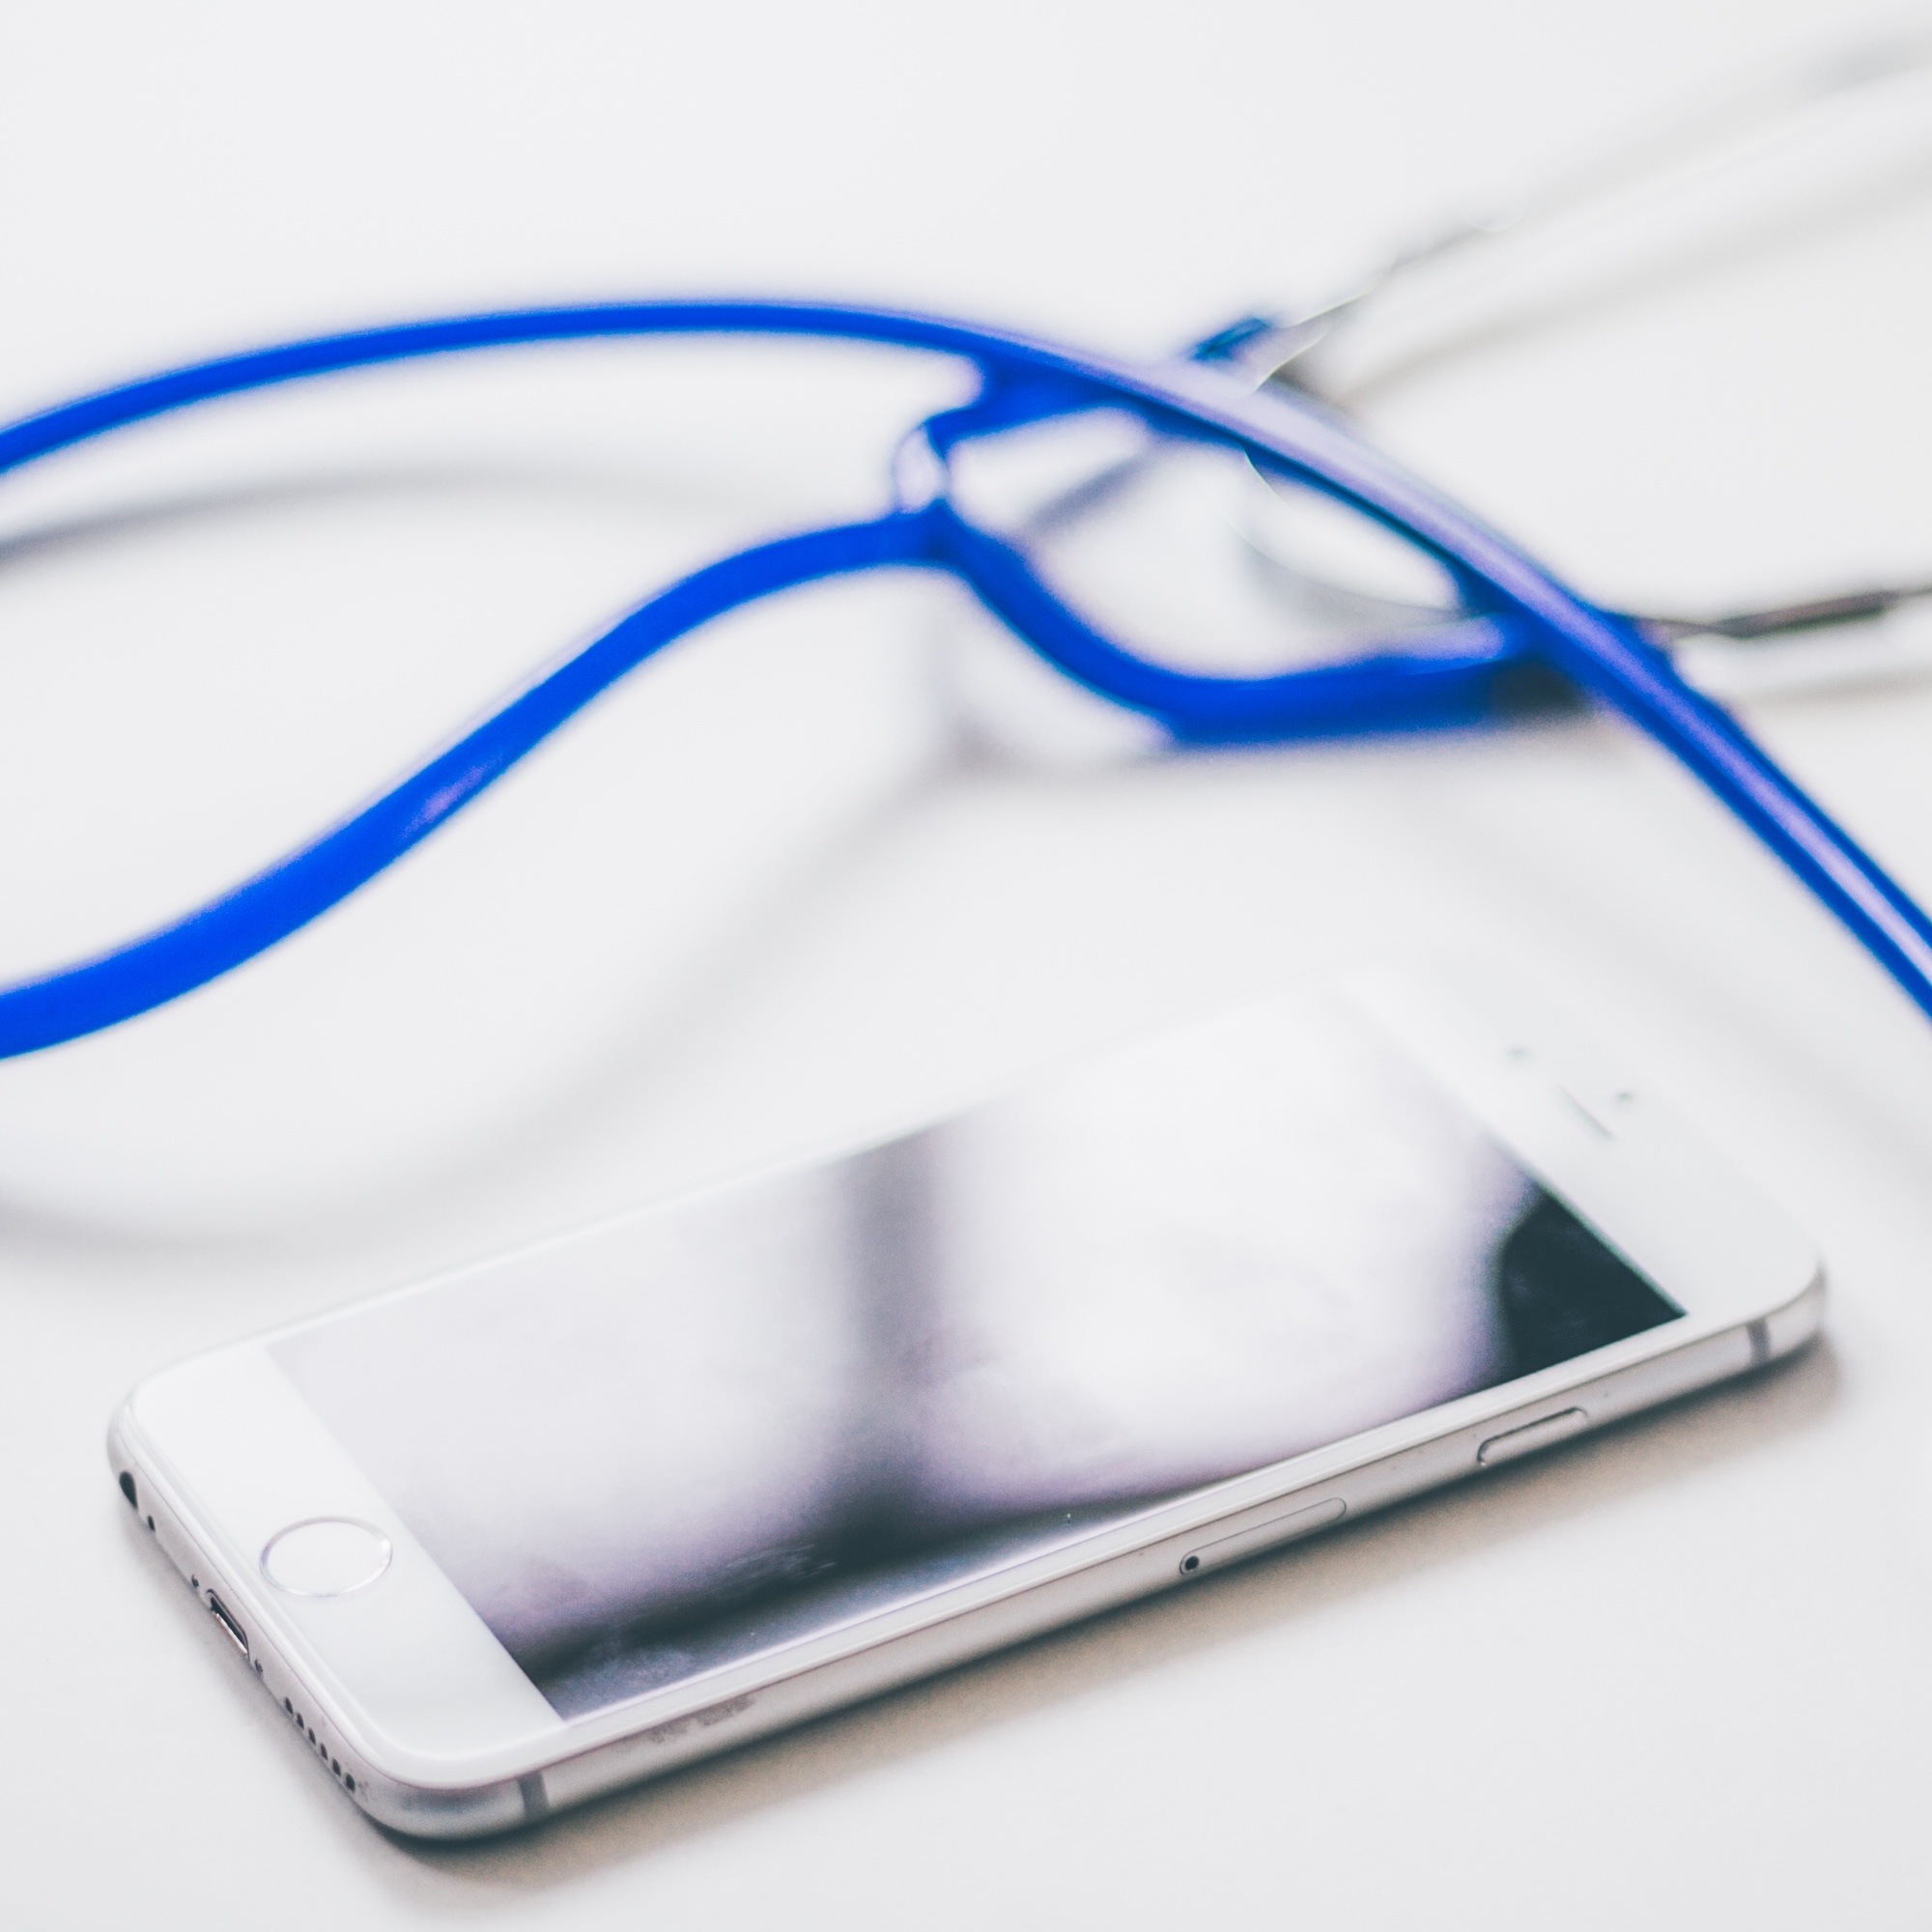 Foto: Weisses iPhone neben einem Stethoskop